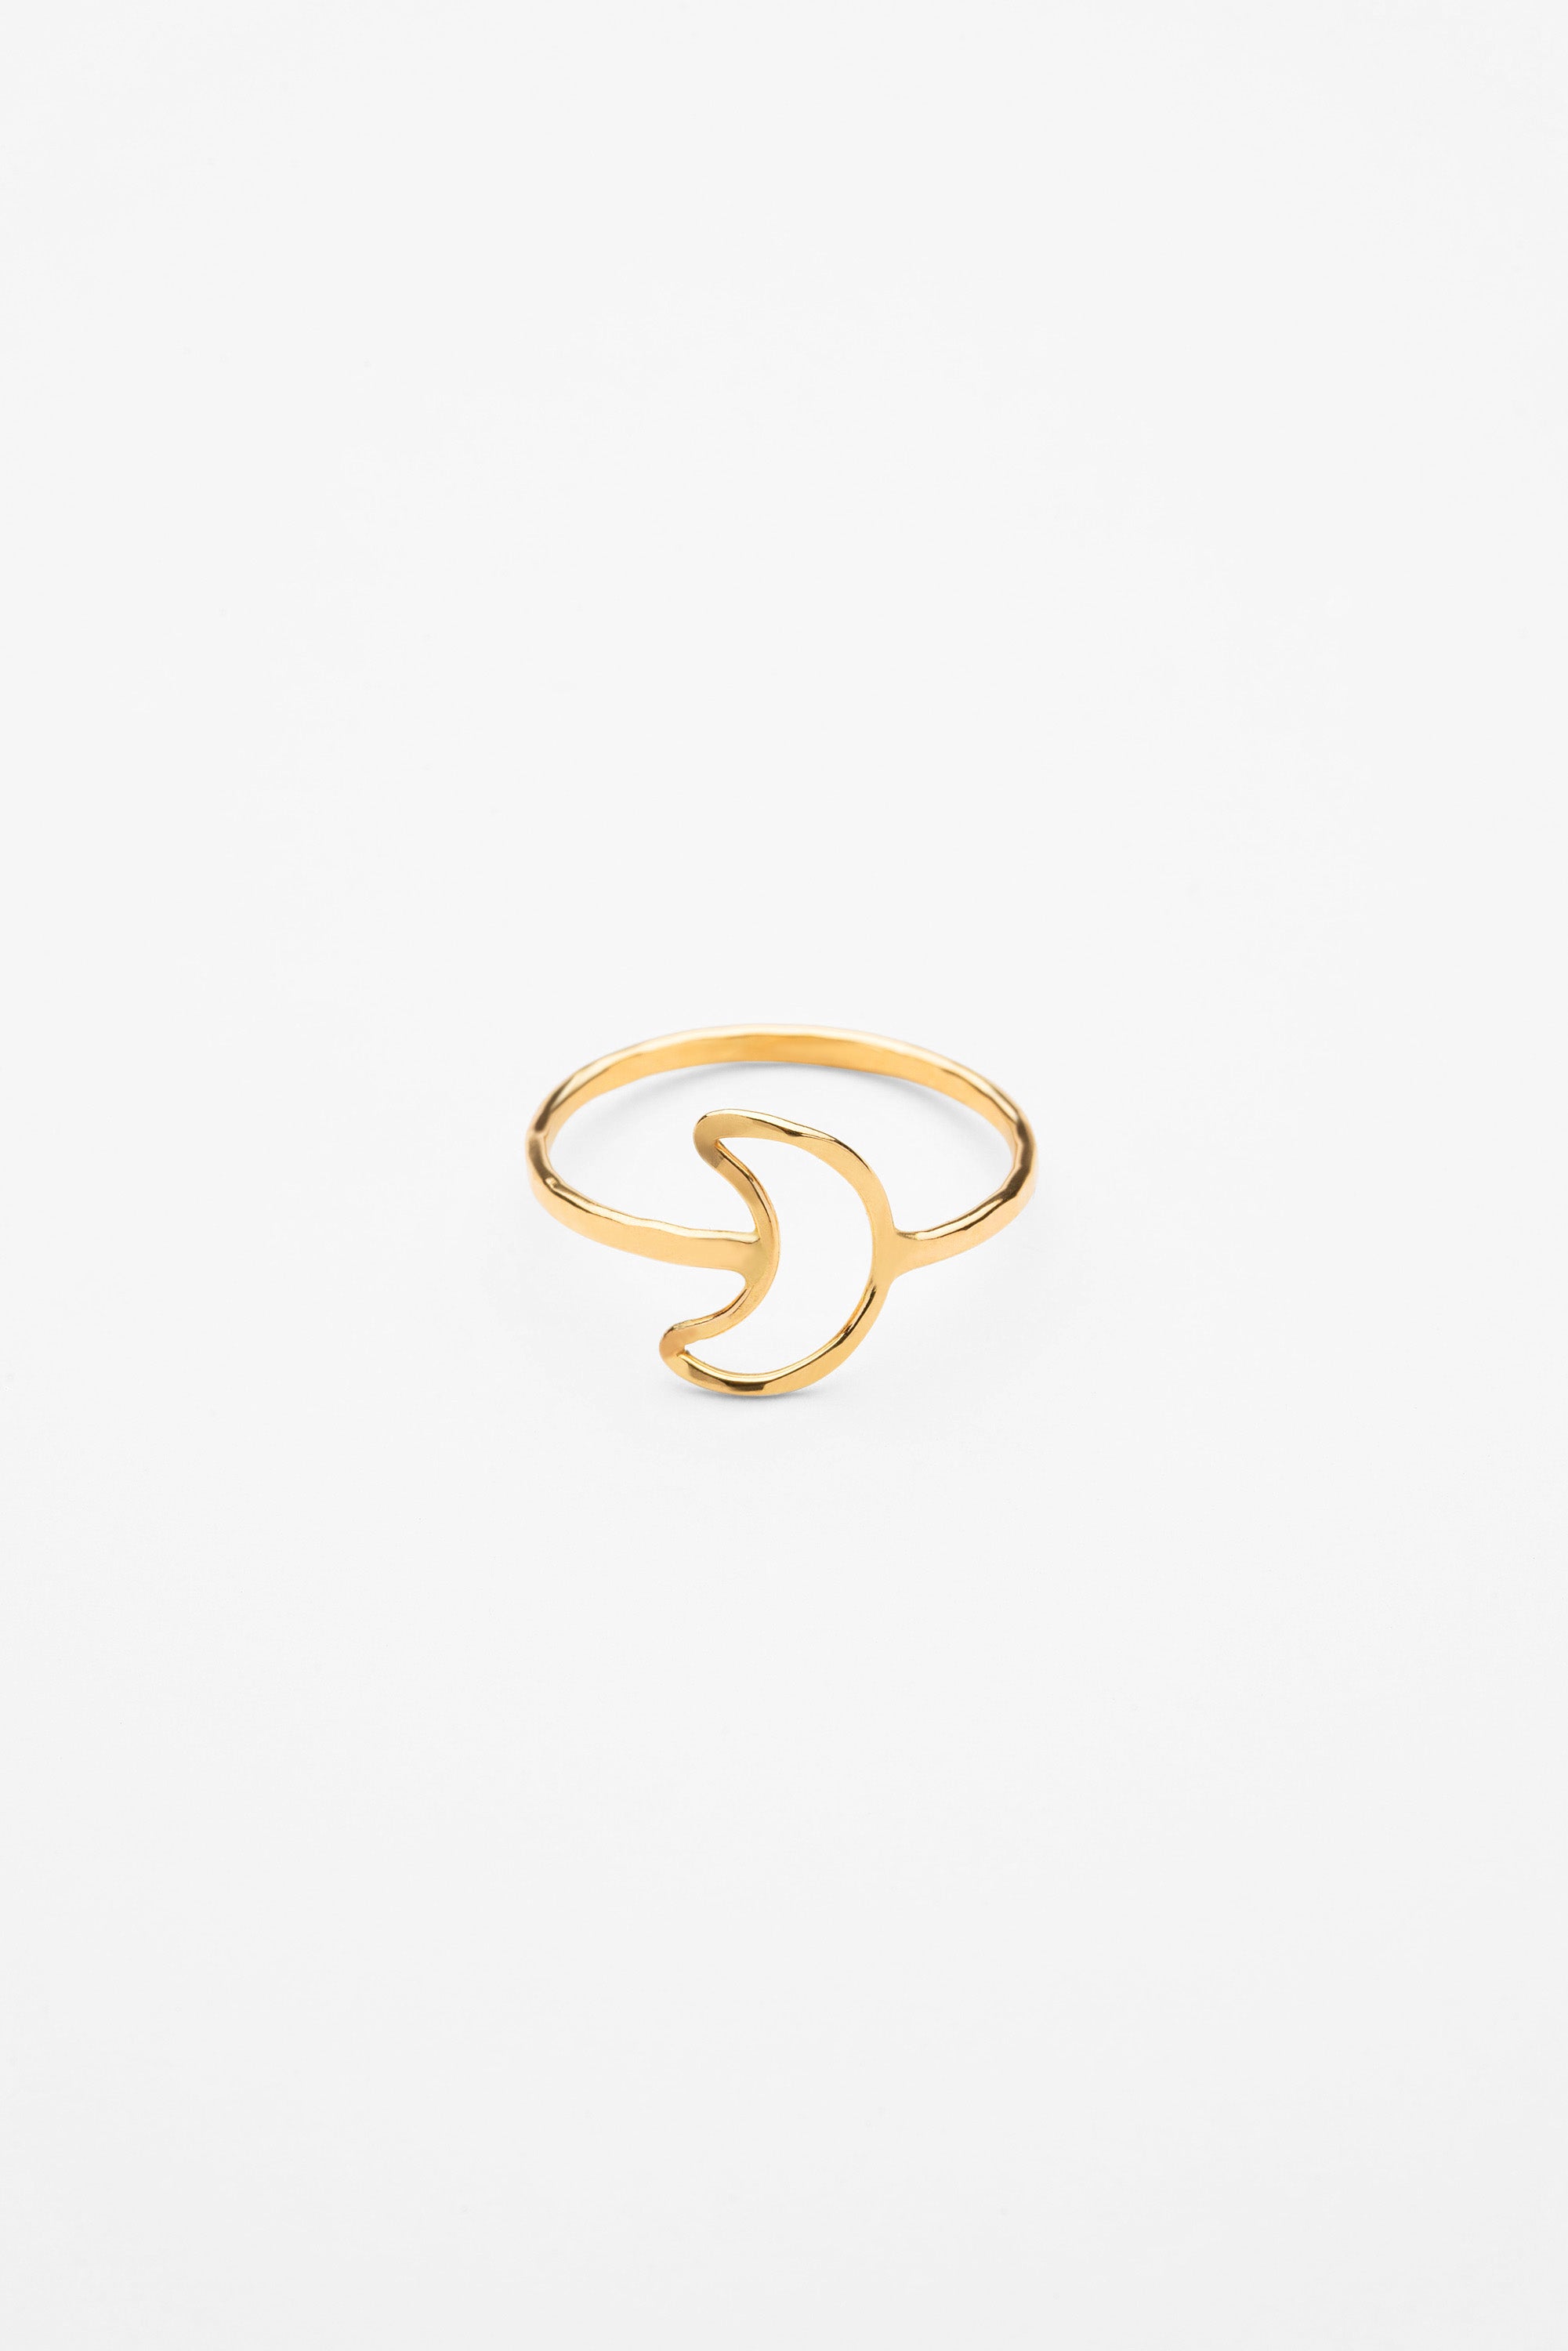 Mahina Moon Ring, Designed by Keani Hawai'i